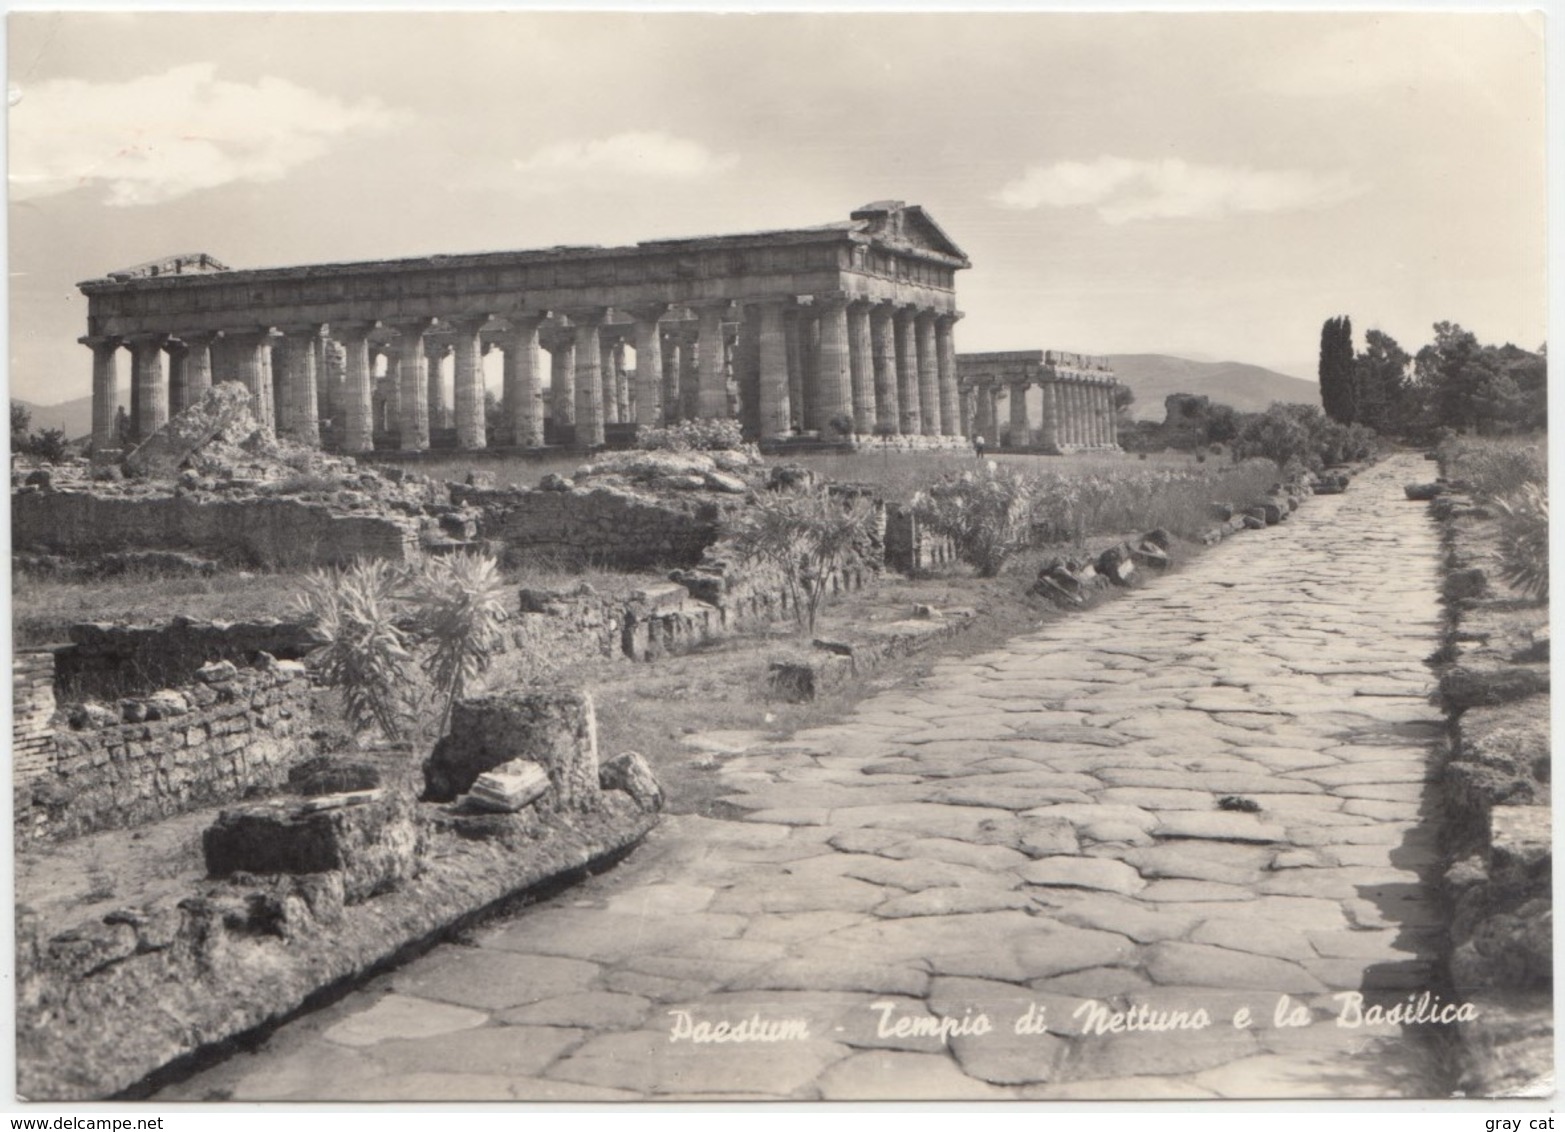 PAESTUM, Tempio Di Nettuno E La Basilica, Neptune's Temple And Basilica, 1964 Used Real Photo Postcard [22071] - Salerno